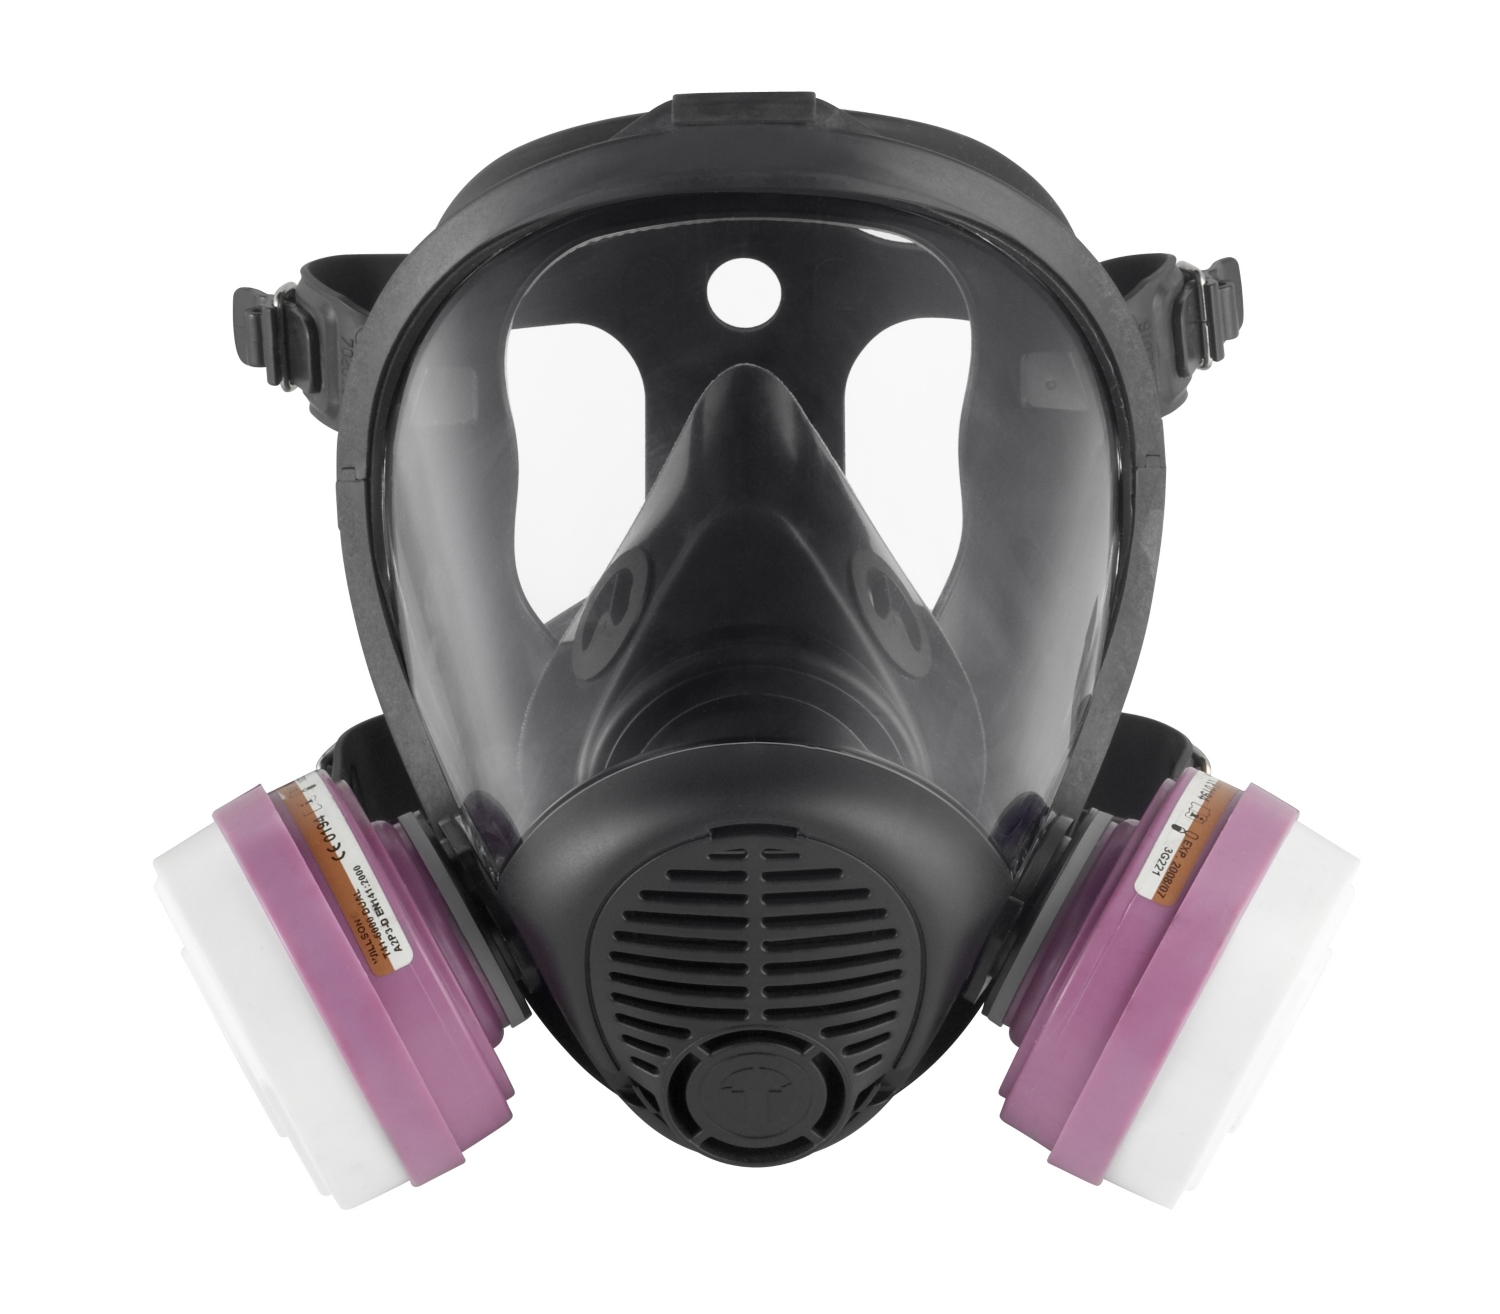 Masque chantier : masque de protection, demi-masque